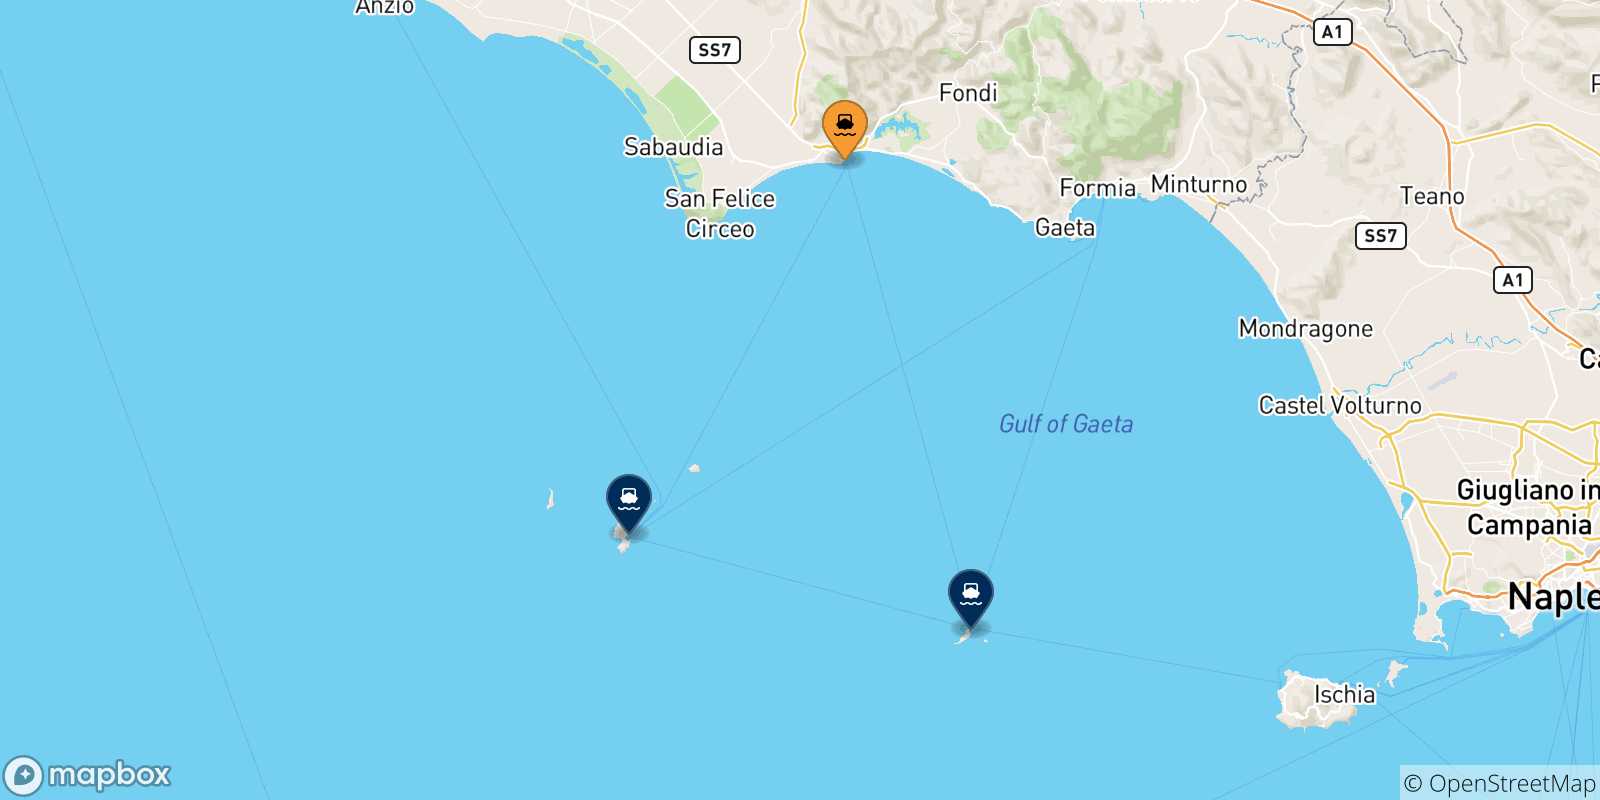 Mappa delle possibili rotte tra Terracina e le Isole Pontine